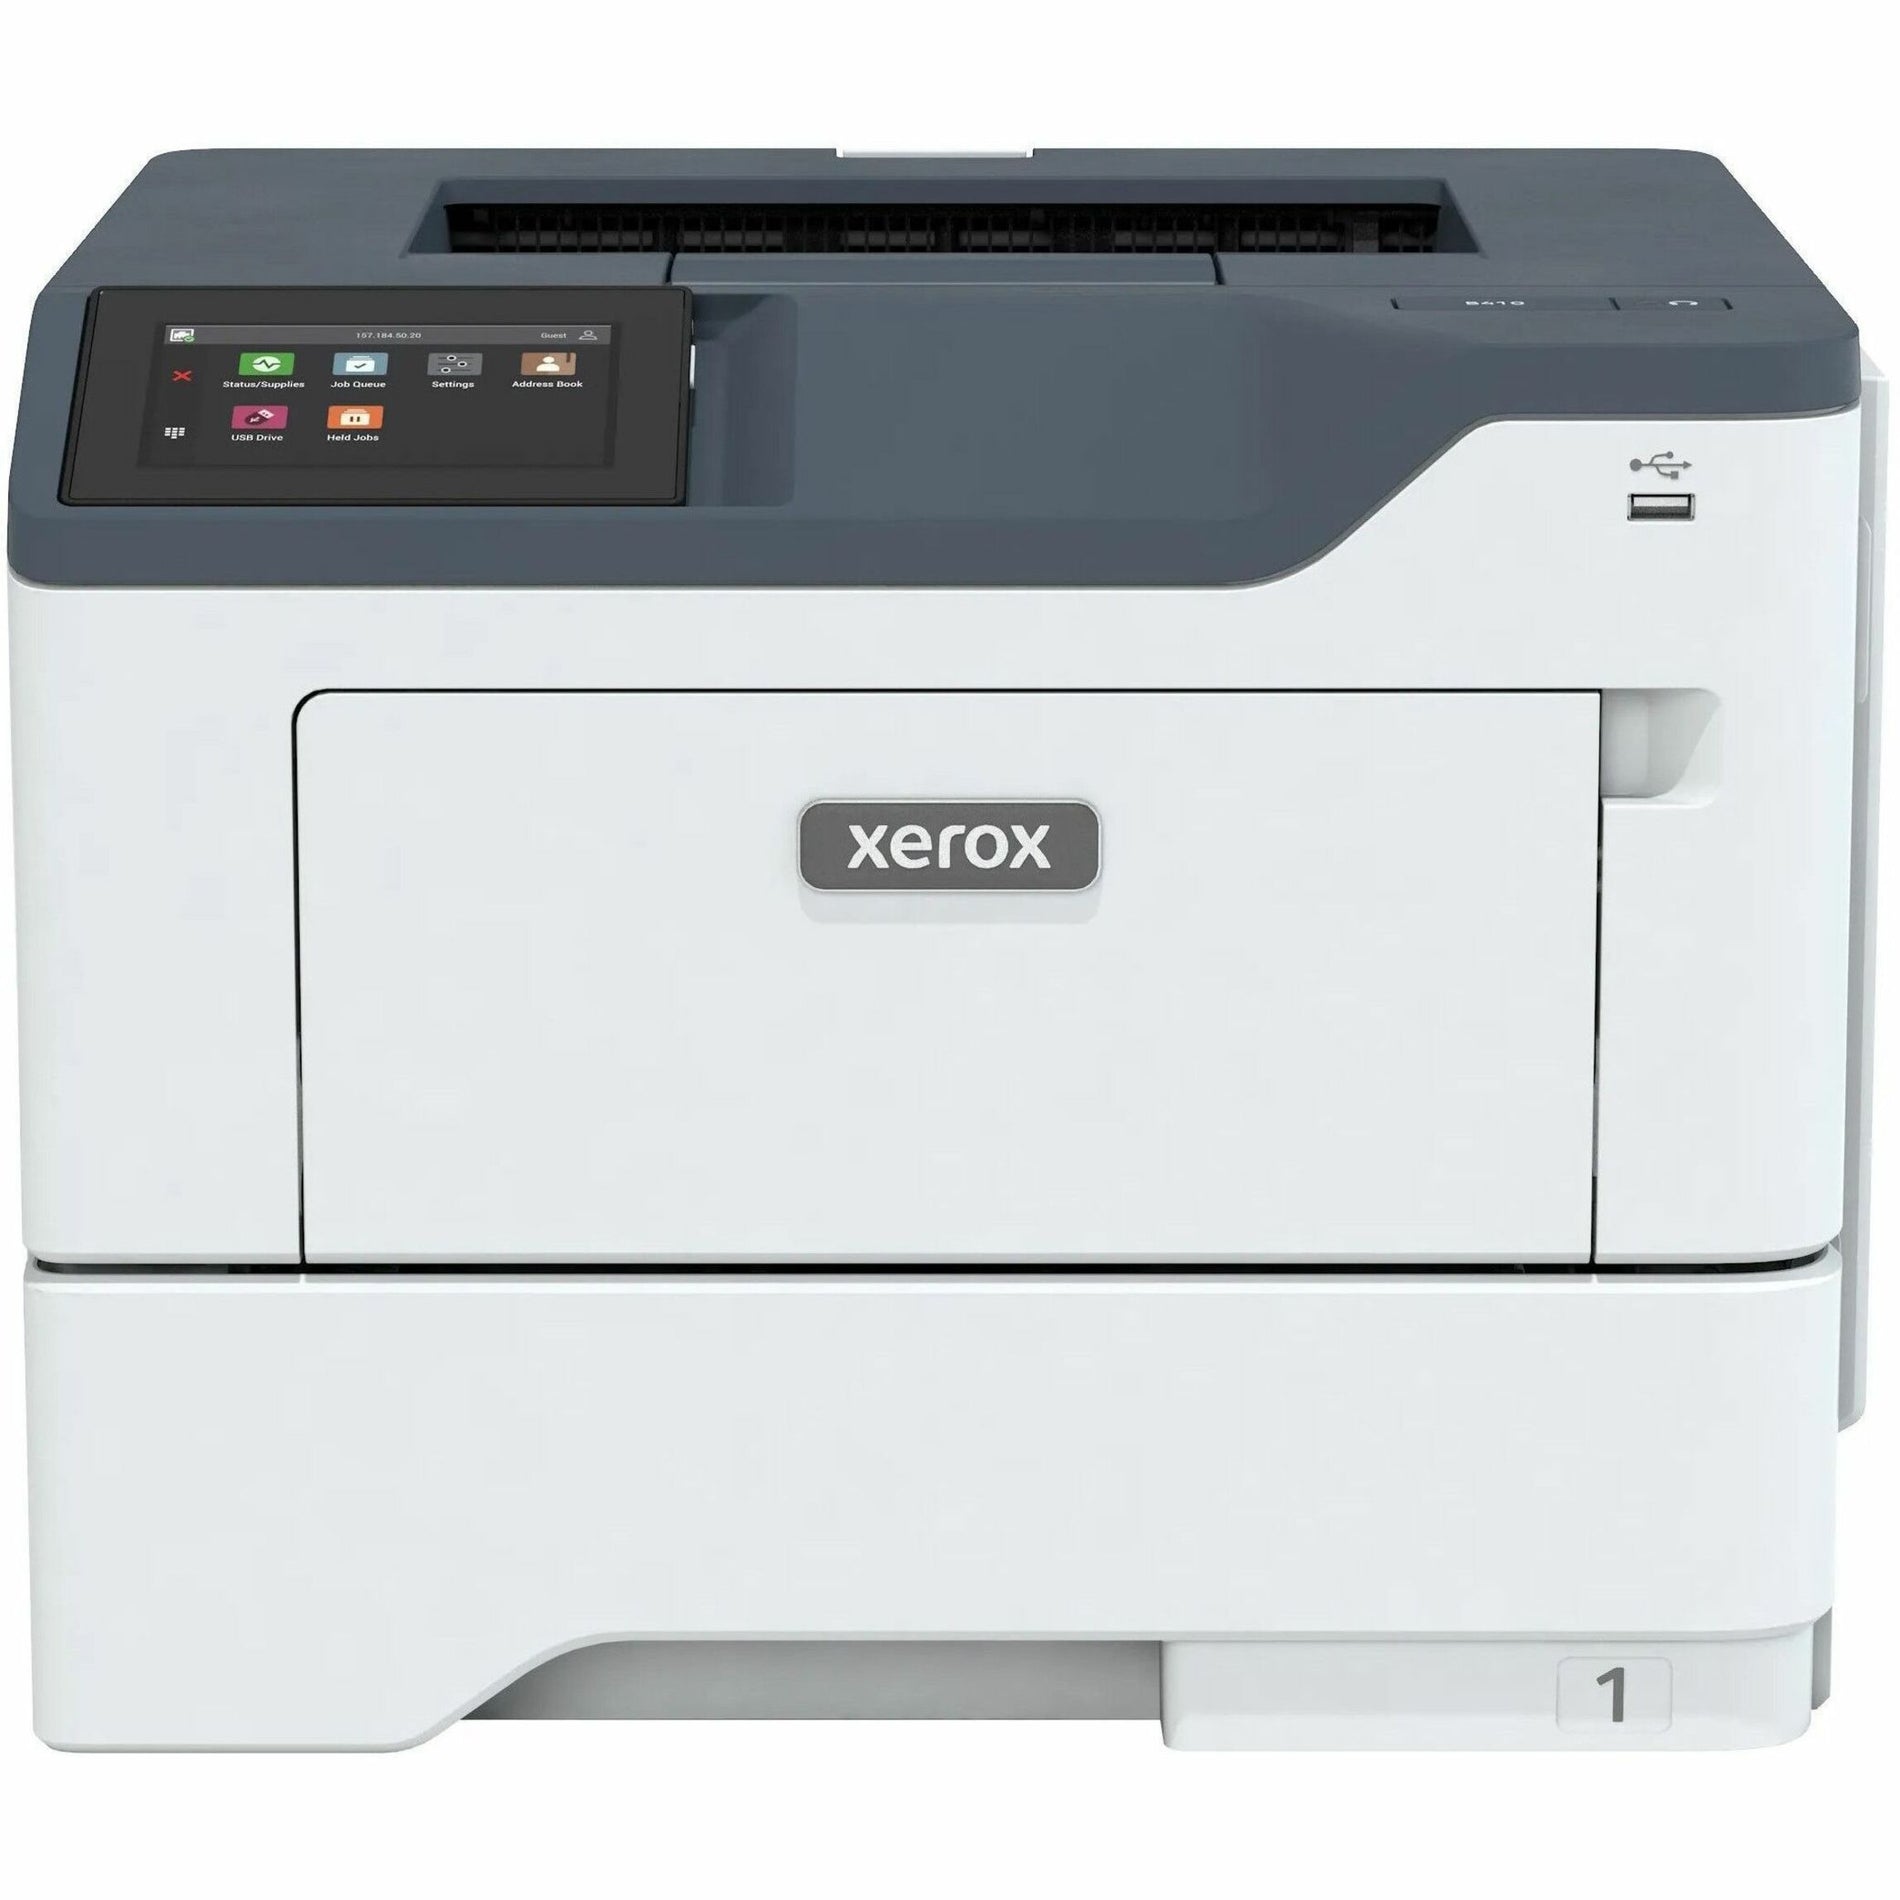 Xerox B410/DN طابعة B410 طابعة ليزر أحادية اللون 50 صفحة في الدقيقة طباعة ذاتية التعدد إيثرنت جيجابايت إتصال USB